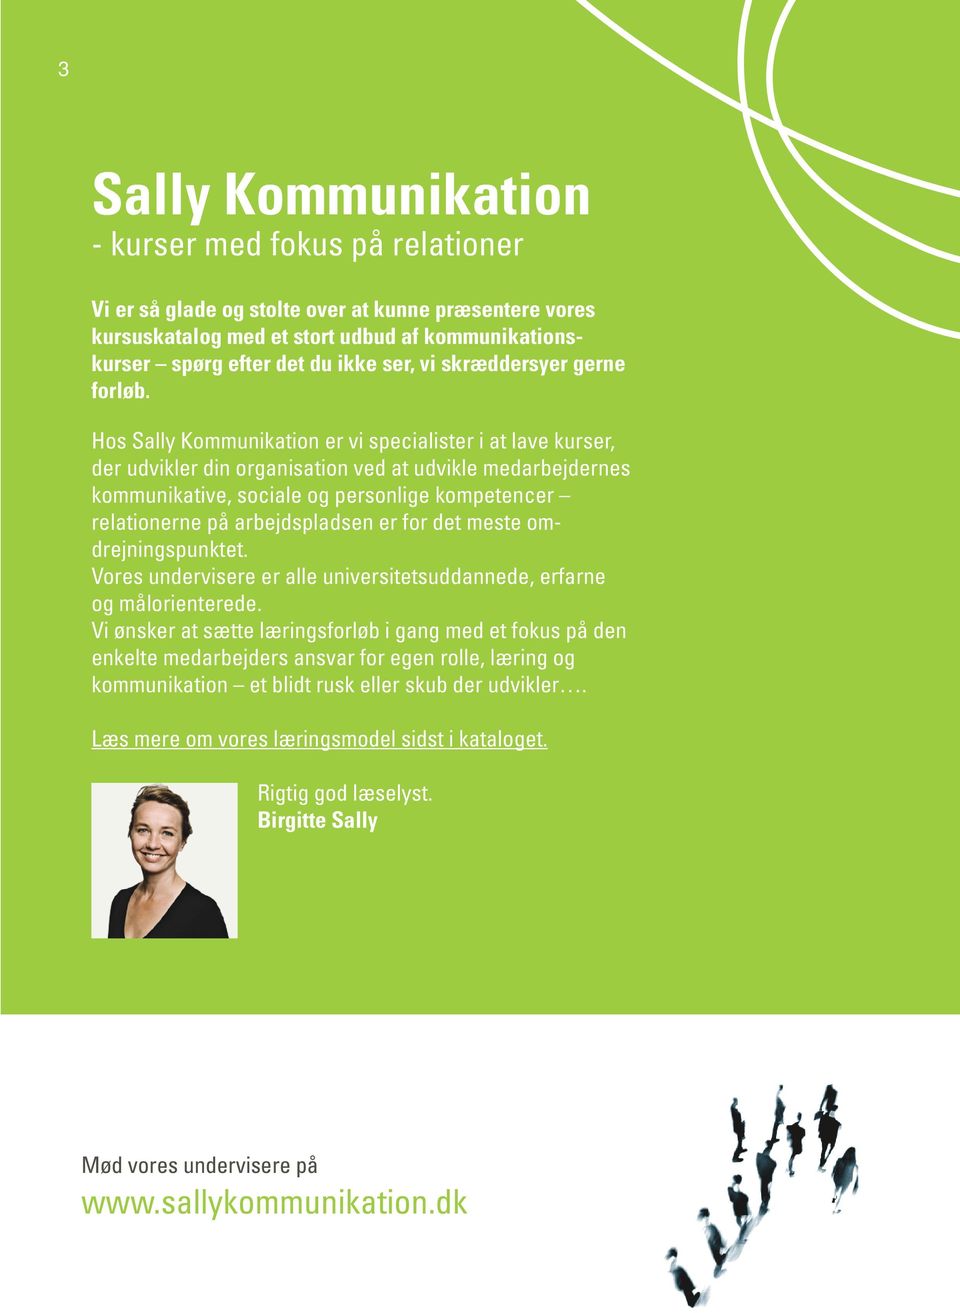 Hos Sally Kommunikation er vi specialister i at lave kurser, der udvikler din organisation ved at udvikle medarbejdernes kommunikative, sociale og personlige kompetencer relationerne på